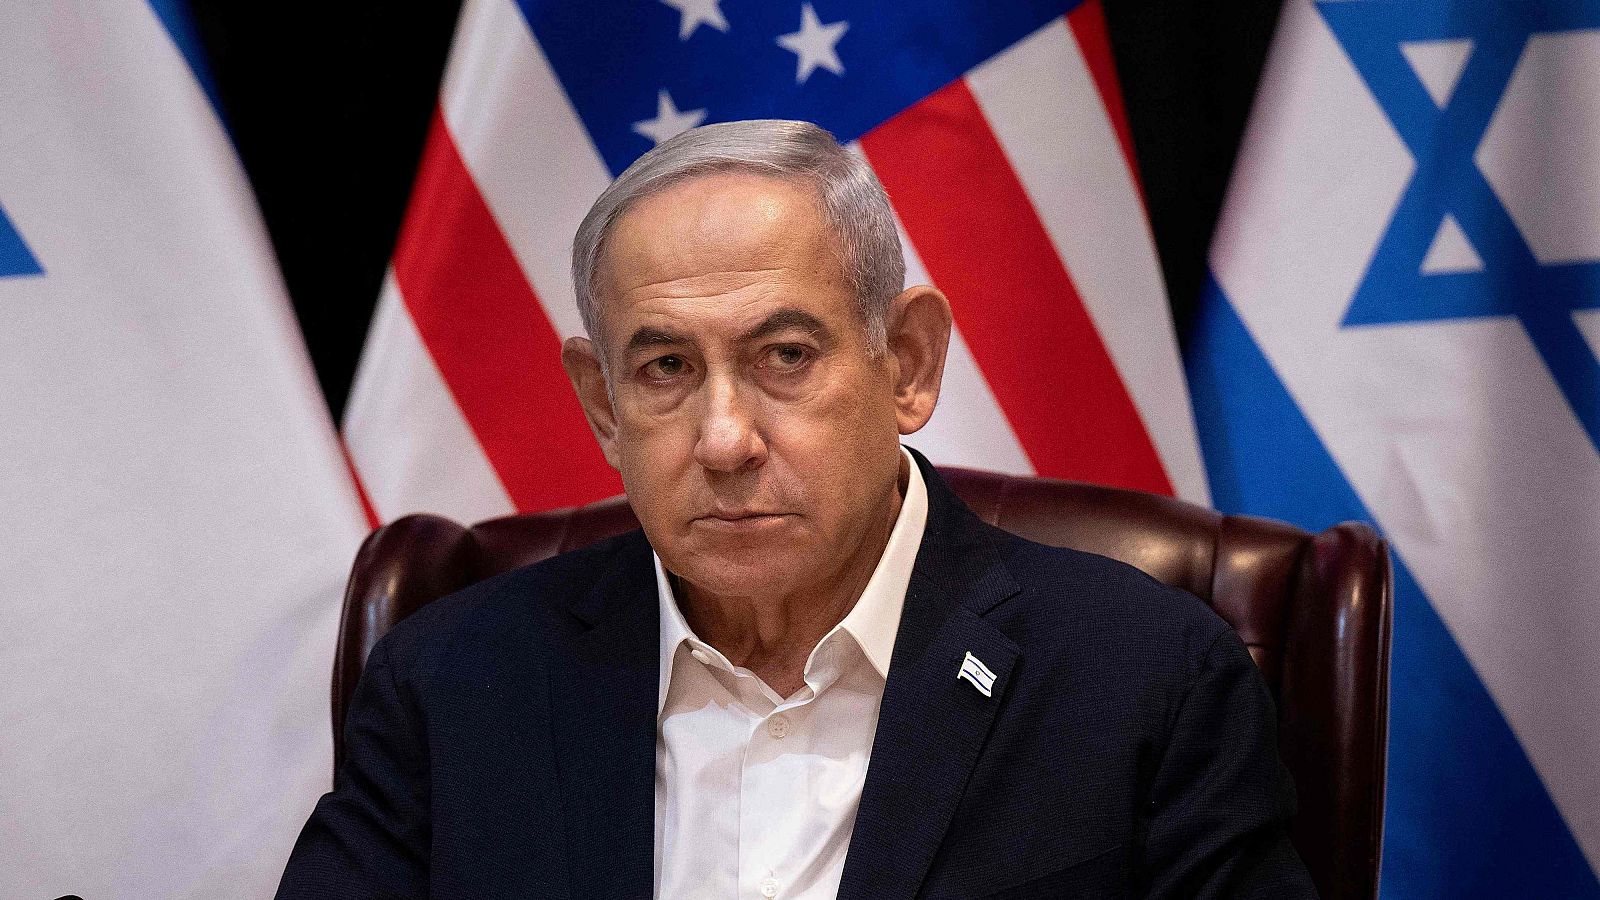 La negociación de la tregua en Gaza enfrenta al Gobierno de Netanyahu